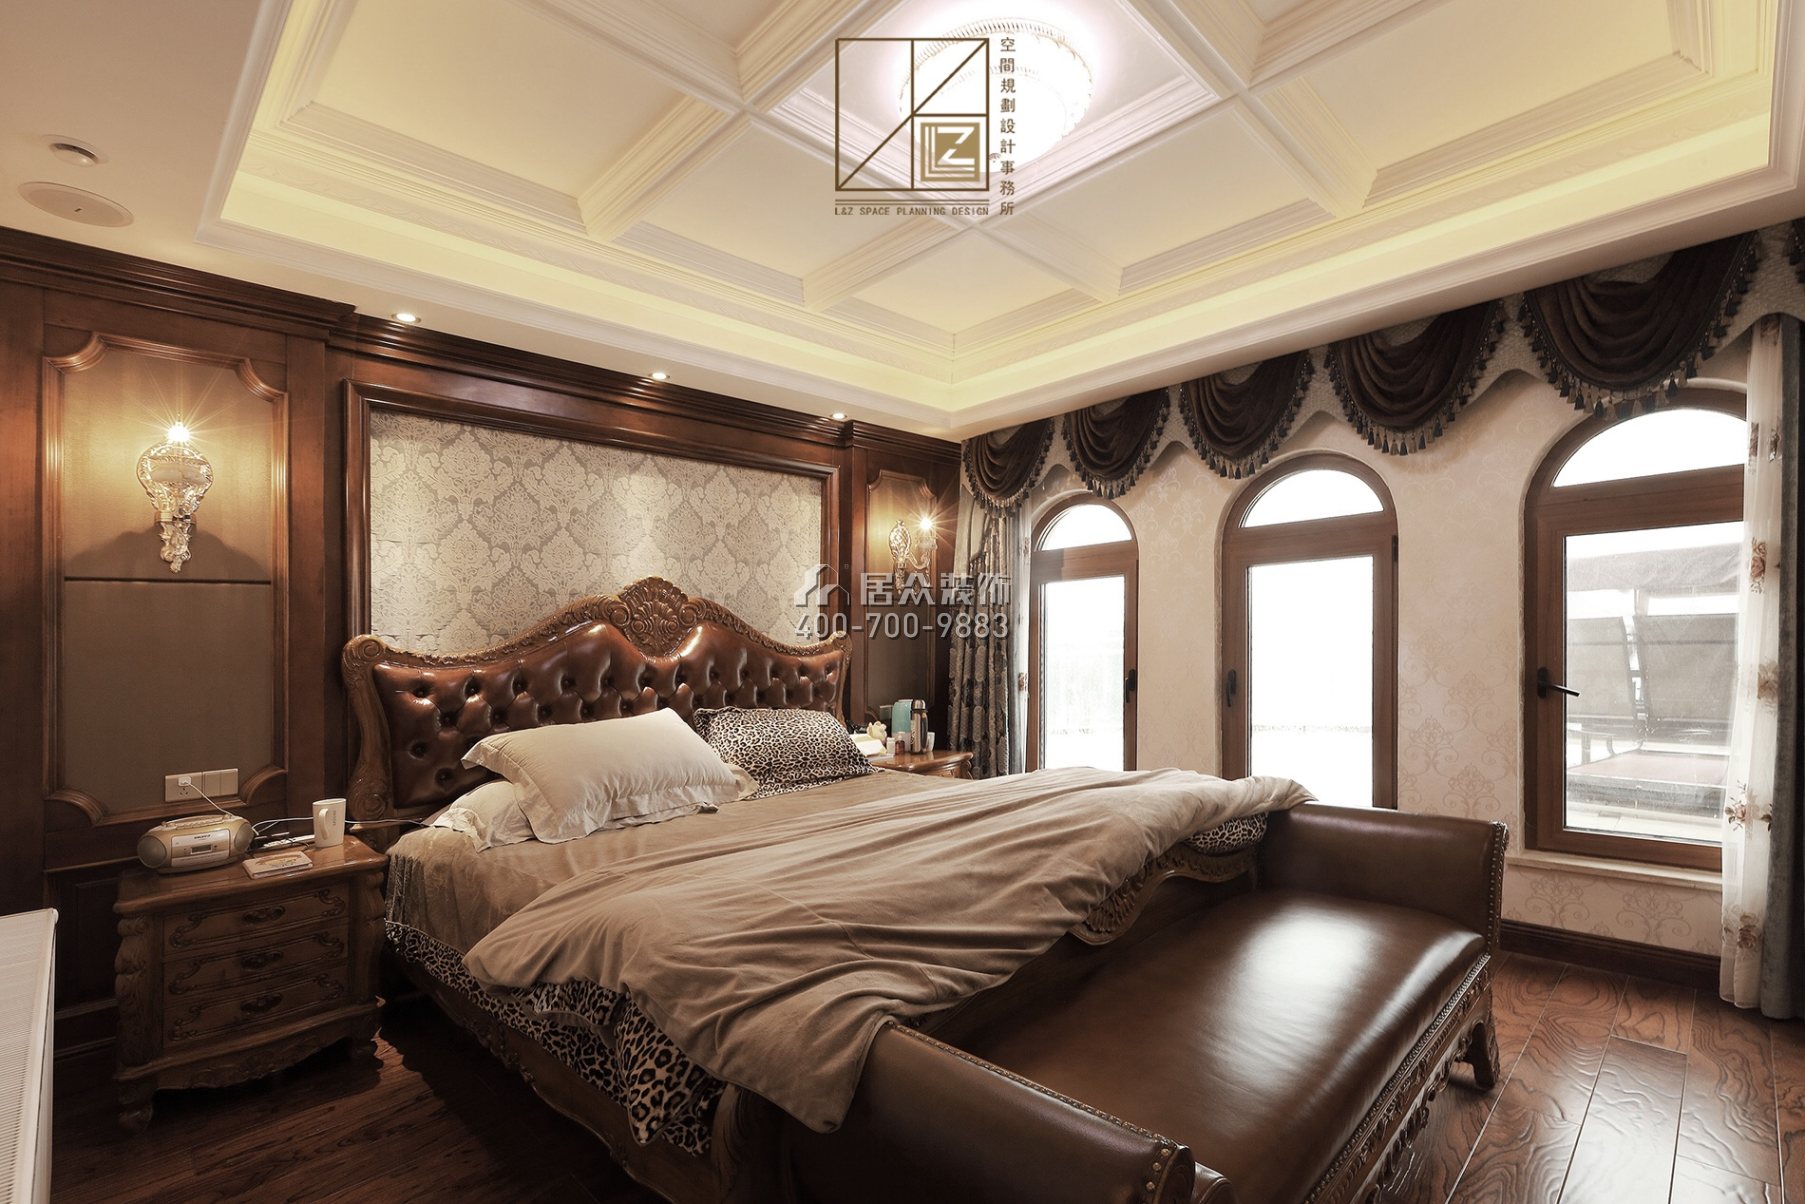 富湾国际720平方米美式风格复式户型卧室装修效果图